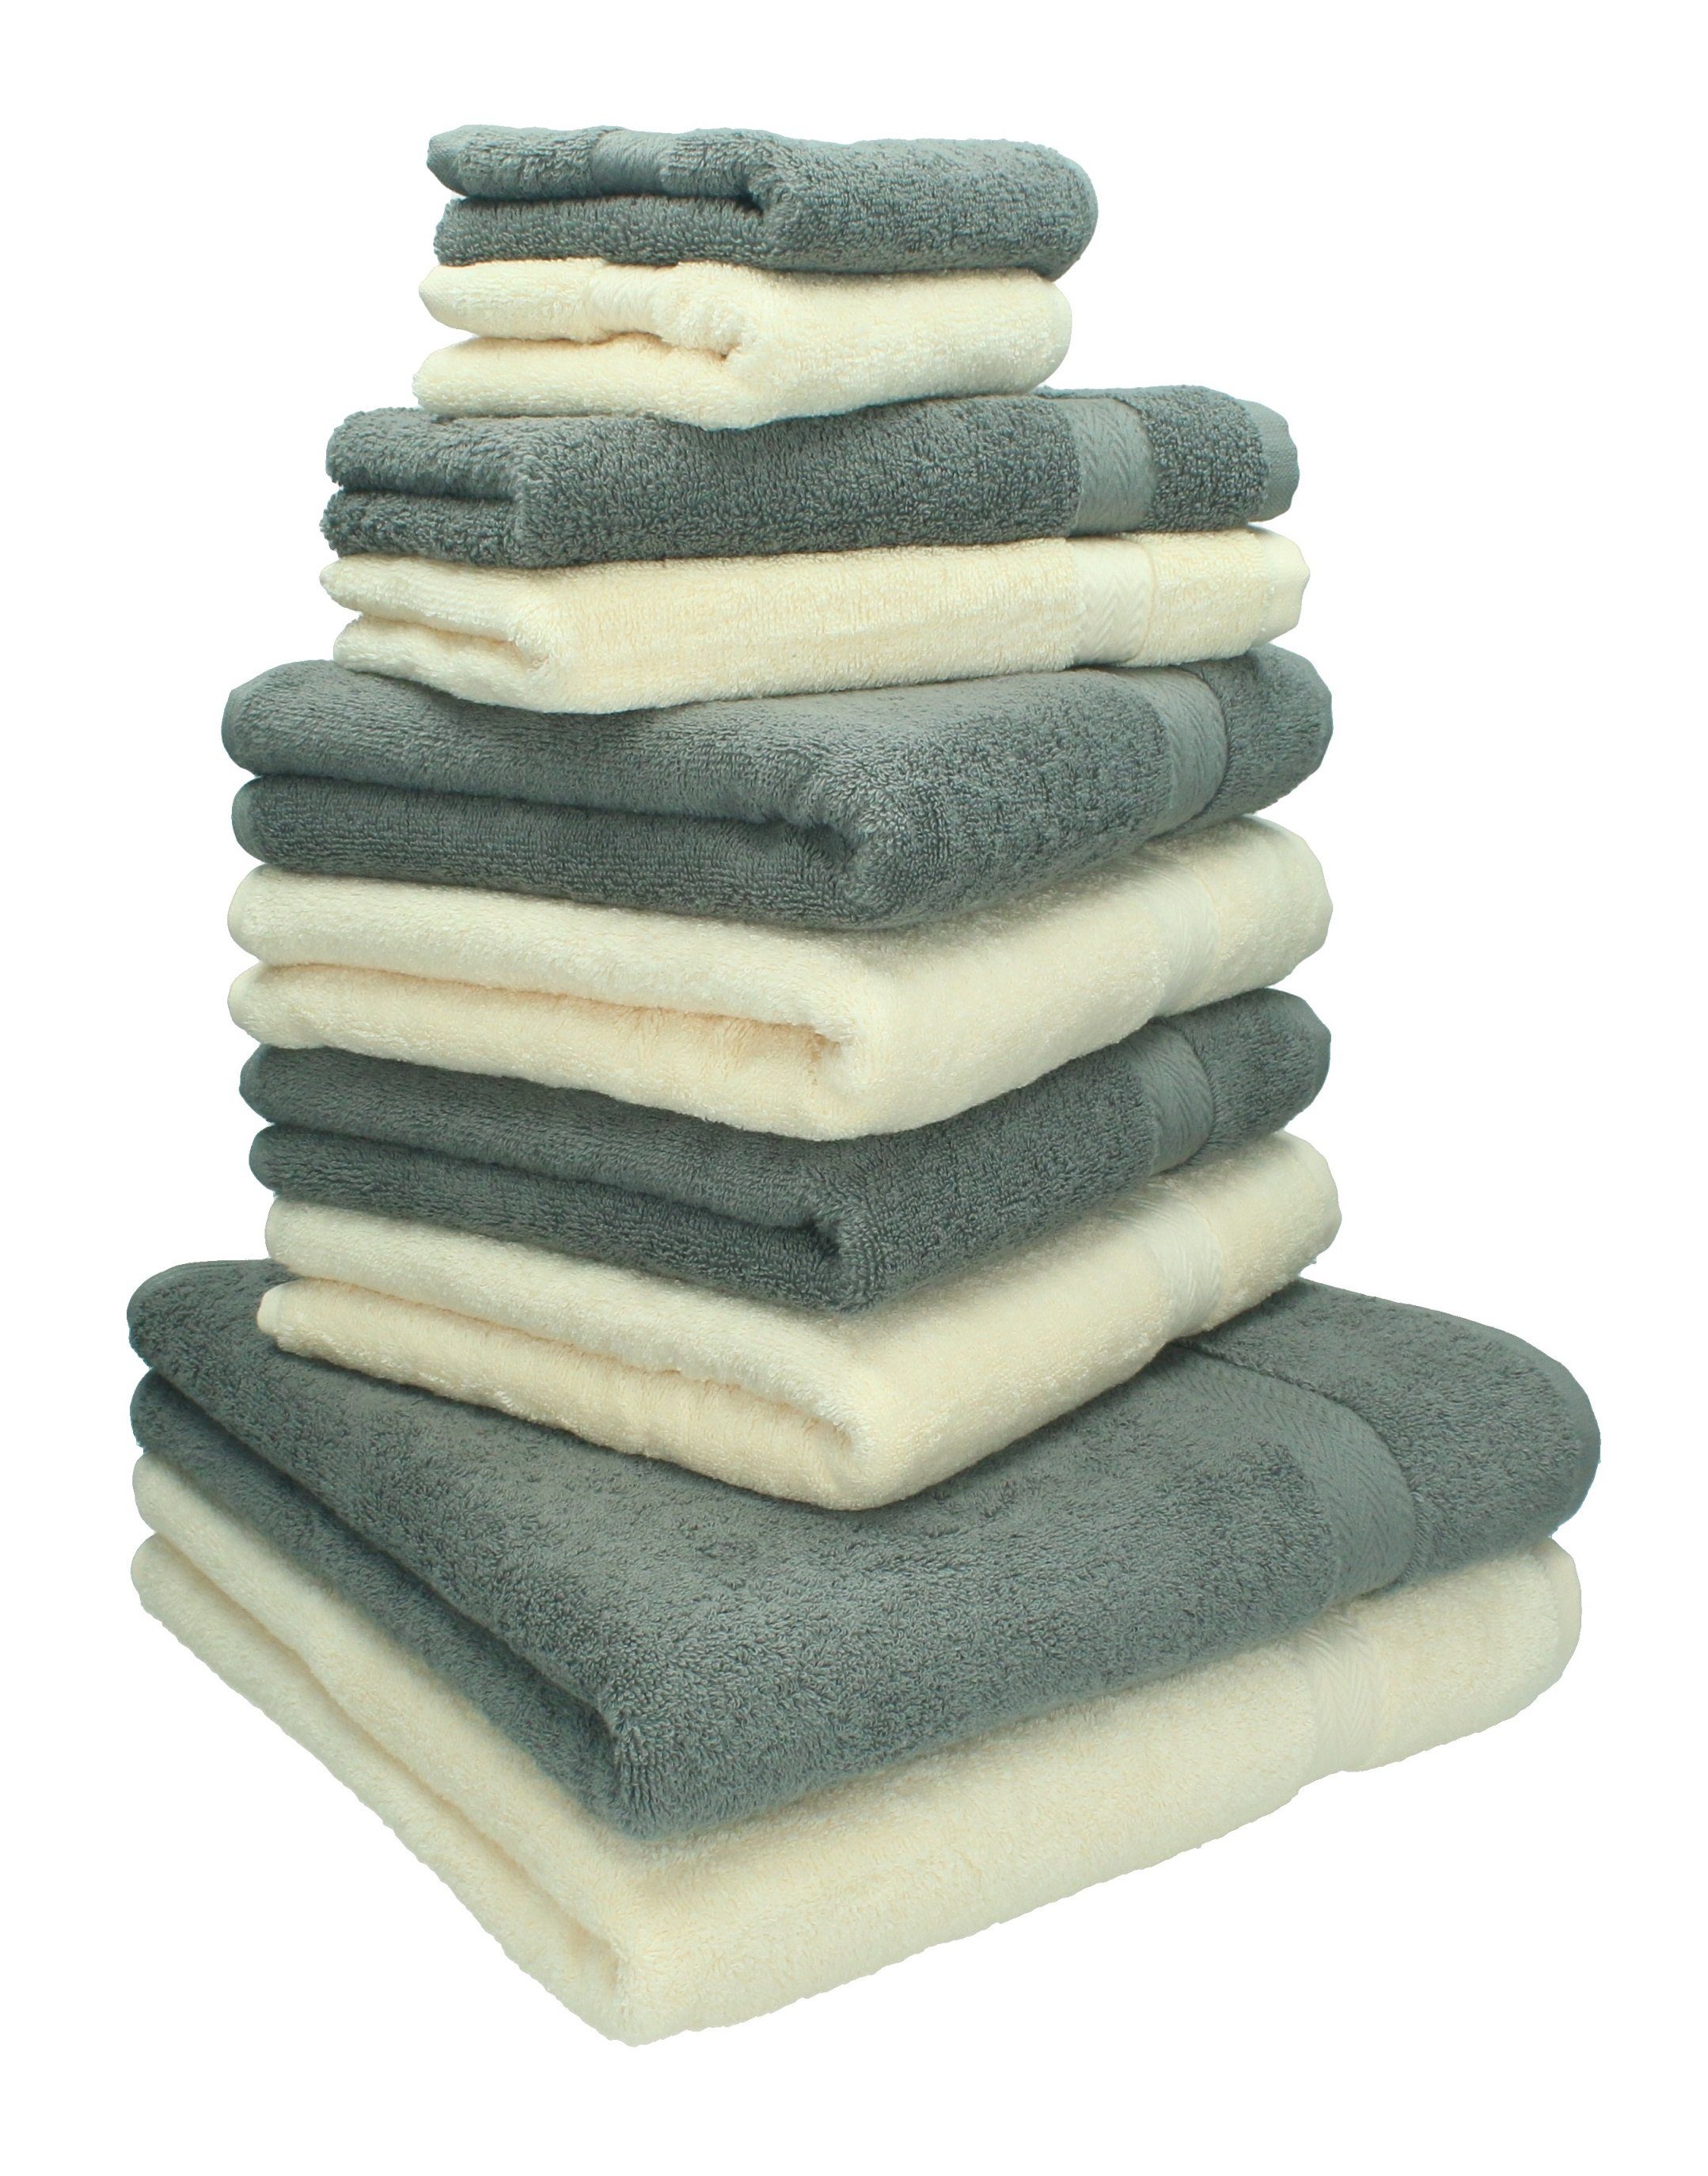 Betz Handtuch Set 10-TLG. Handtücher-Set Classic Farbe beige und anthrazit grau, 100% Baumwolle